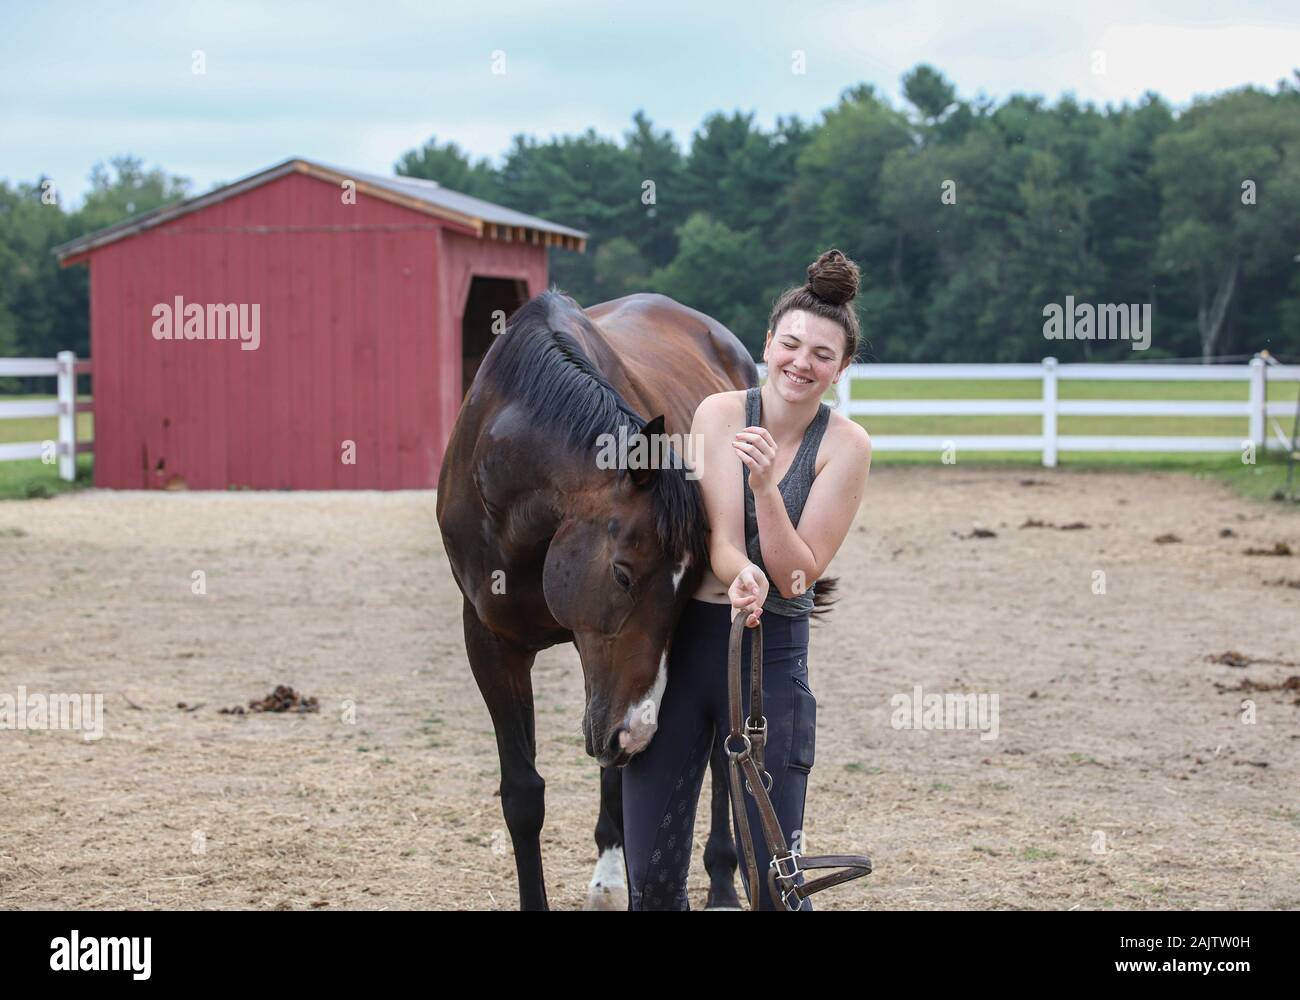 L'adolescente avec son cheval ludique Banque D'Images